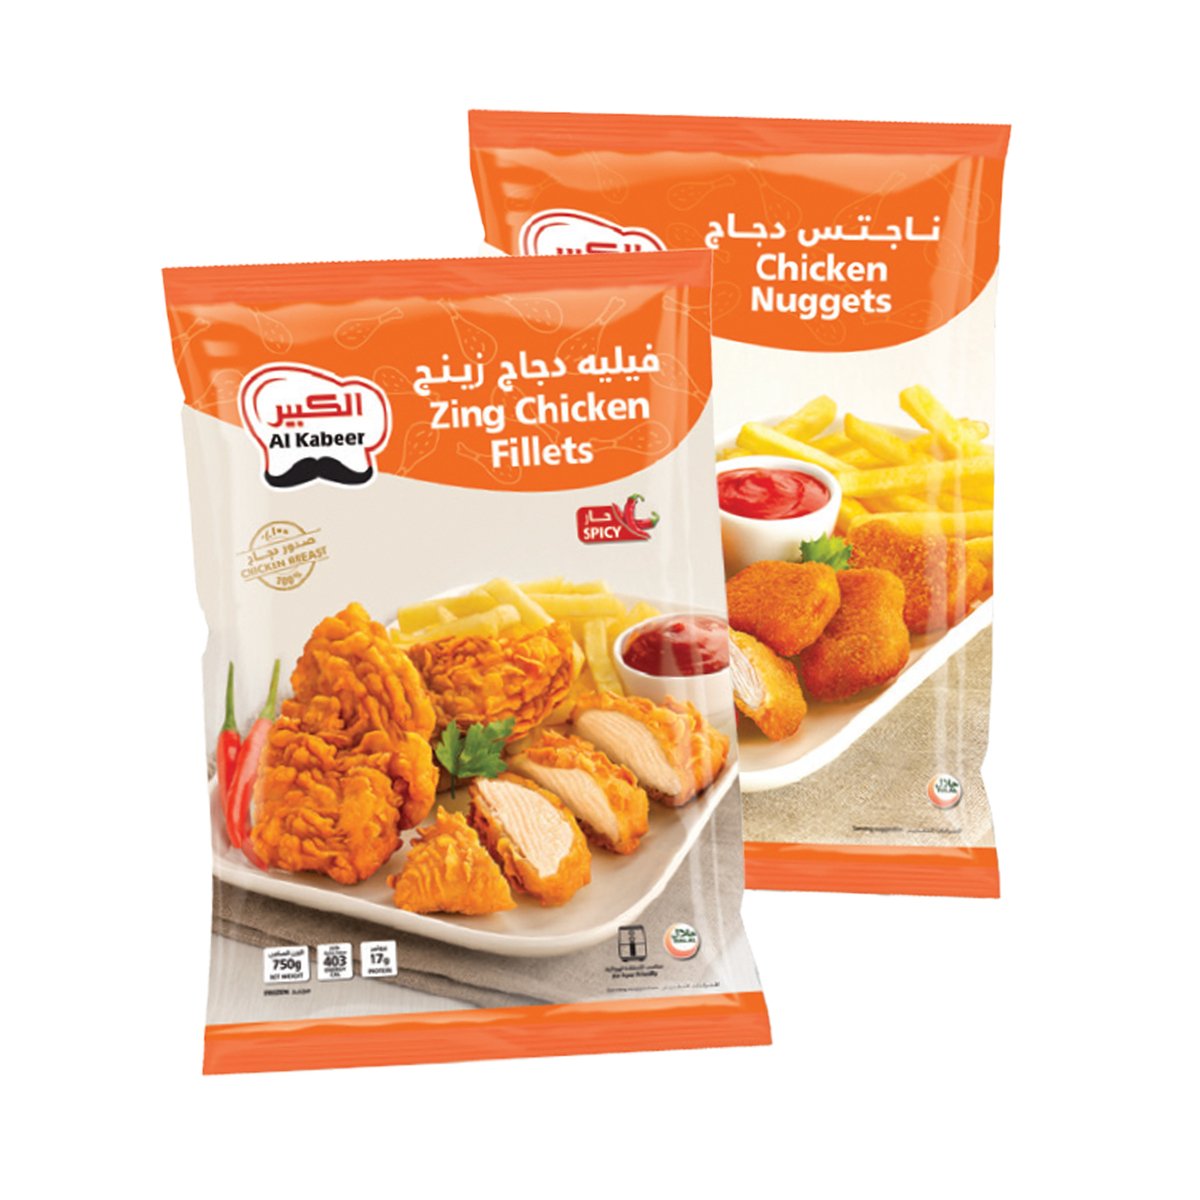 اشتري قم بشراء Al Kabeer Zing Chicken Fillets Spicy 750 g + Nuggets 750 g Online at Best Price من الموقع - من لولو هايبر ماركت Zingers في الامارات